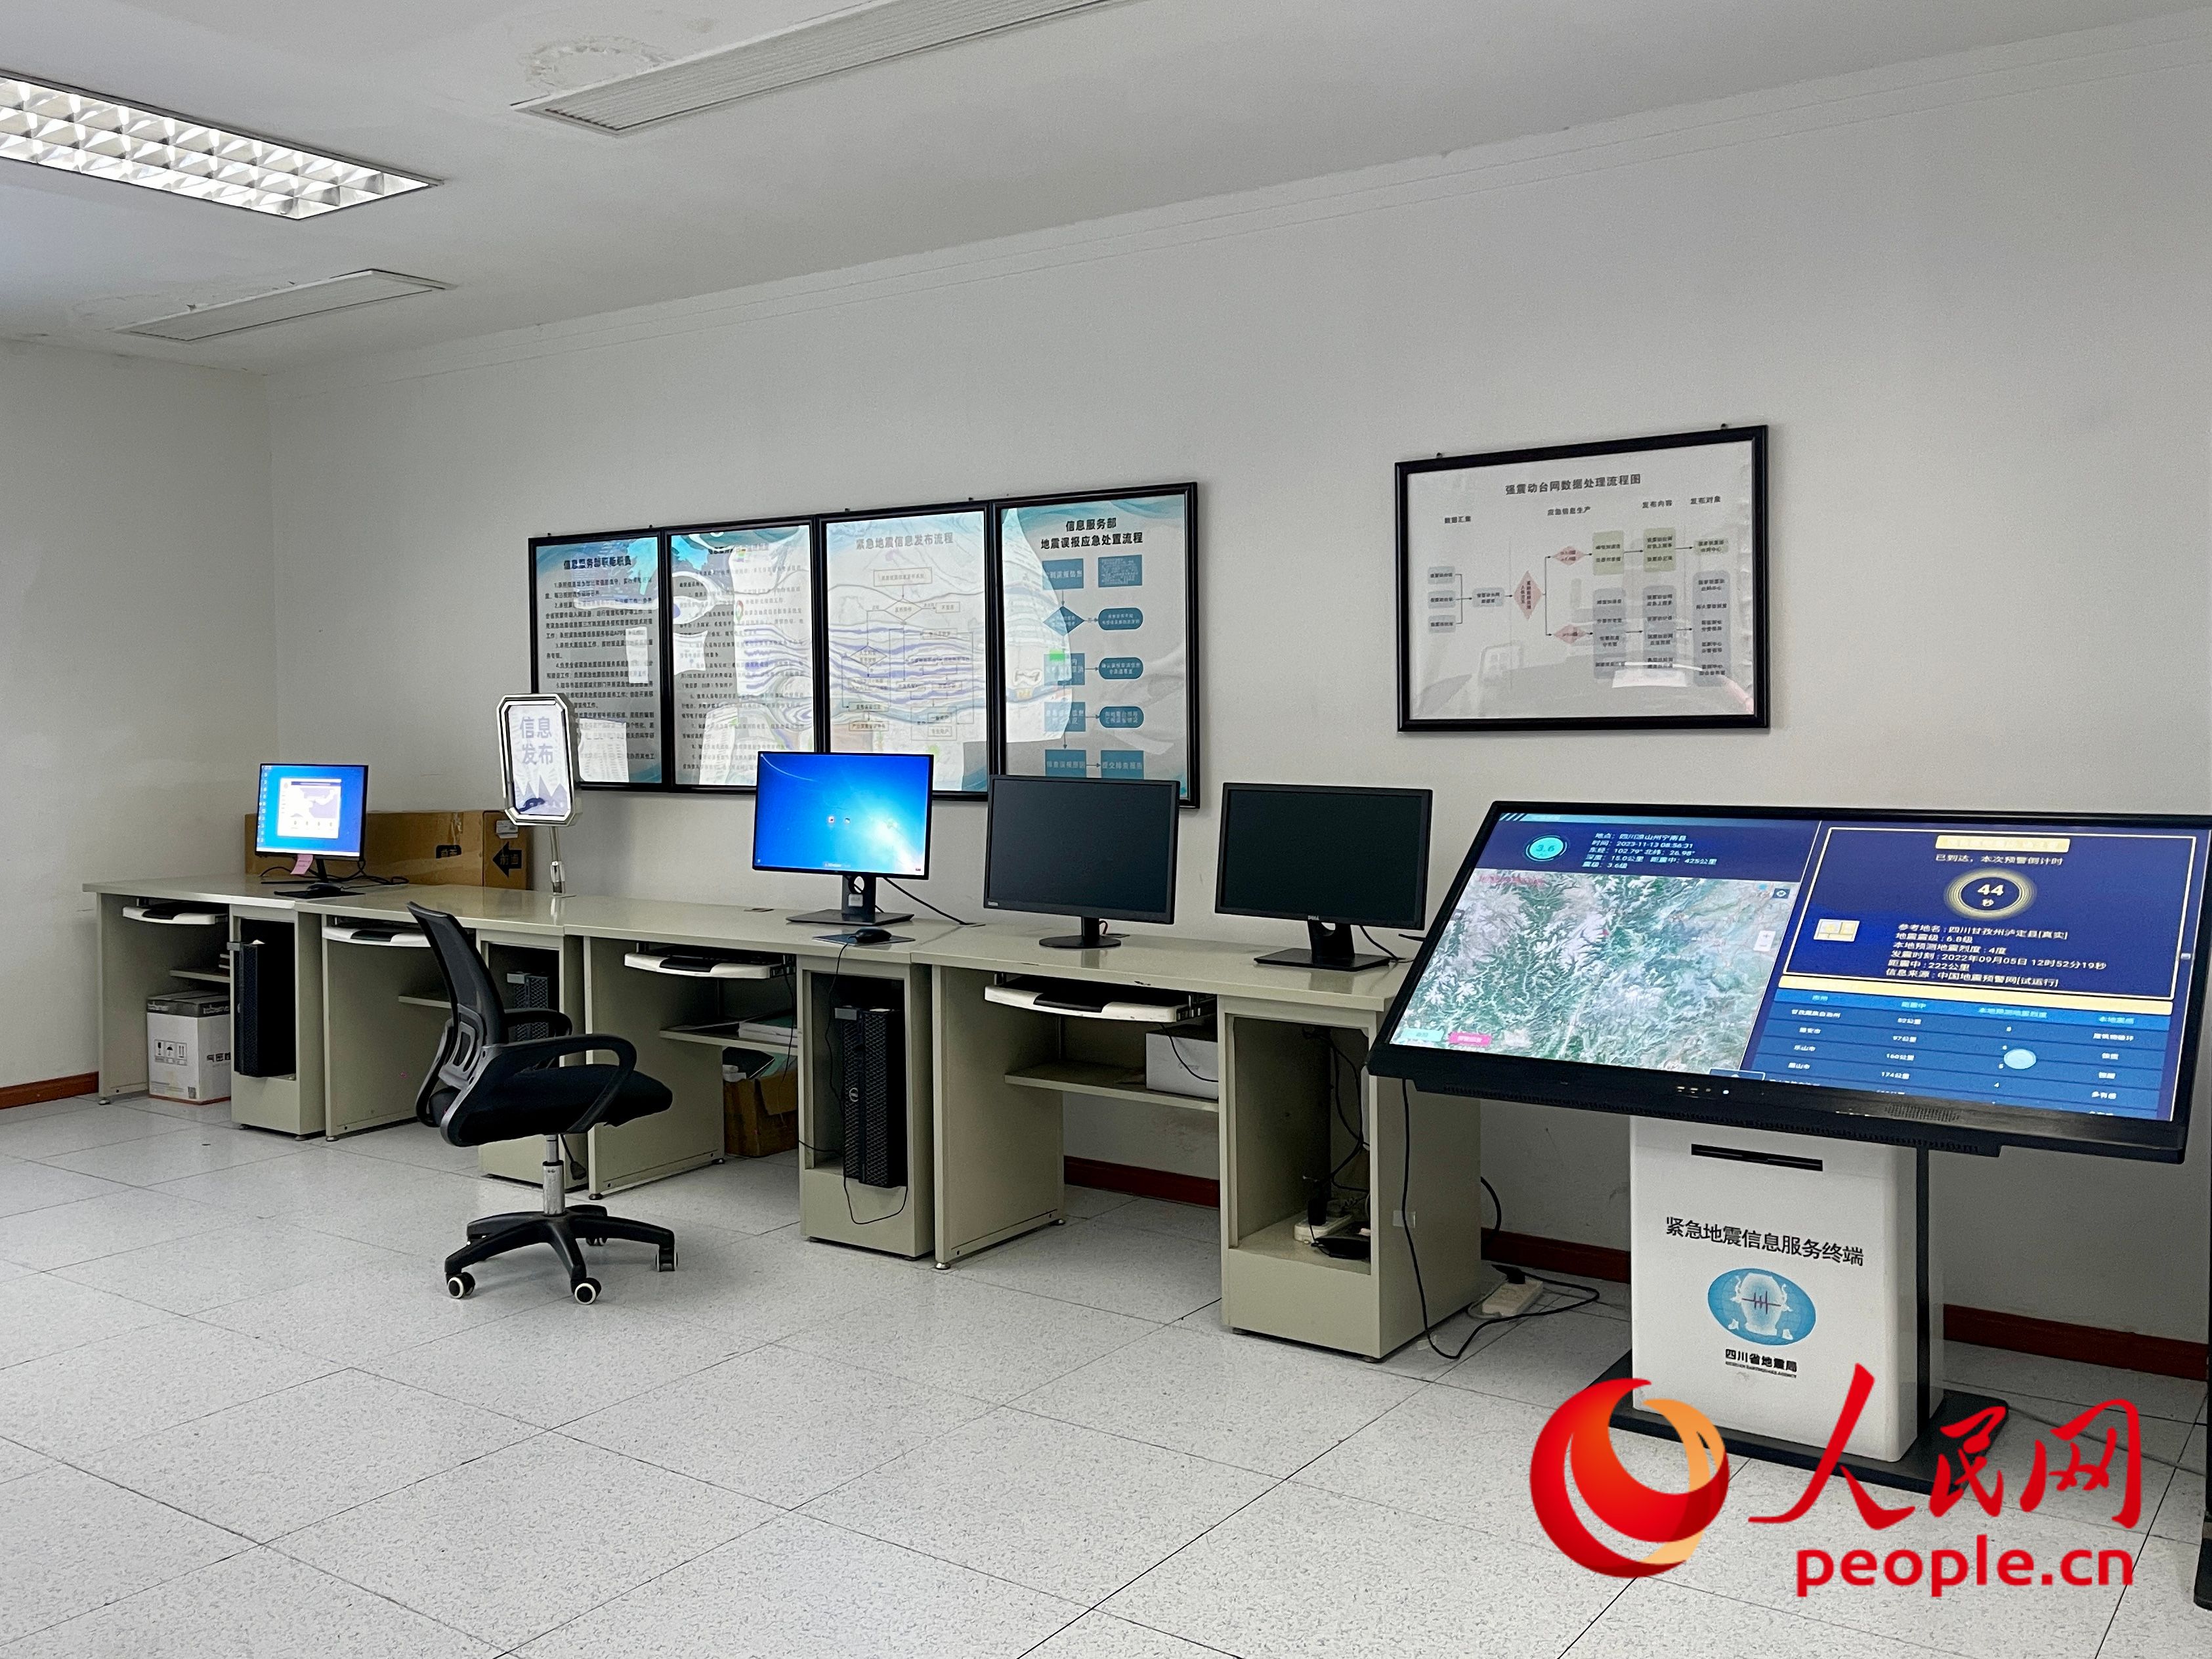 四川地震台中的紧急地震信息服务终端等设备。人民网 周静圆摄